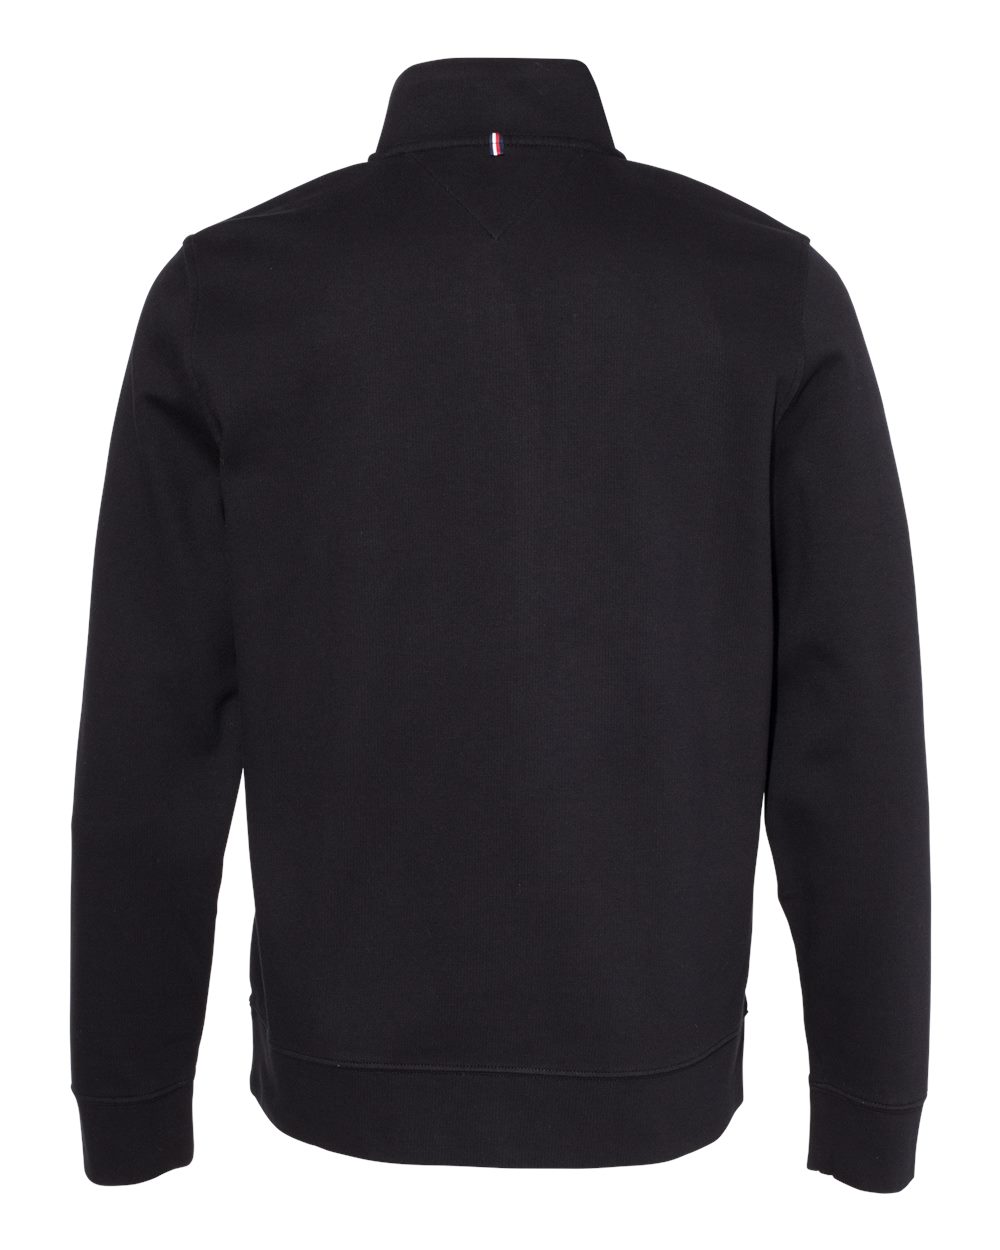 Tommy Hilfiger Quarter-Zip Pullover Sweatshirt #13H1858 Black Back